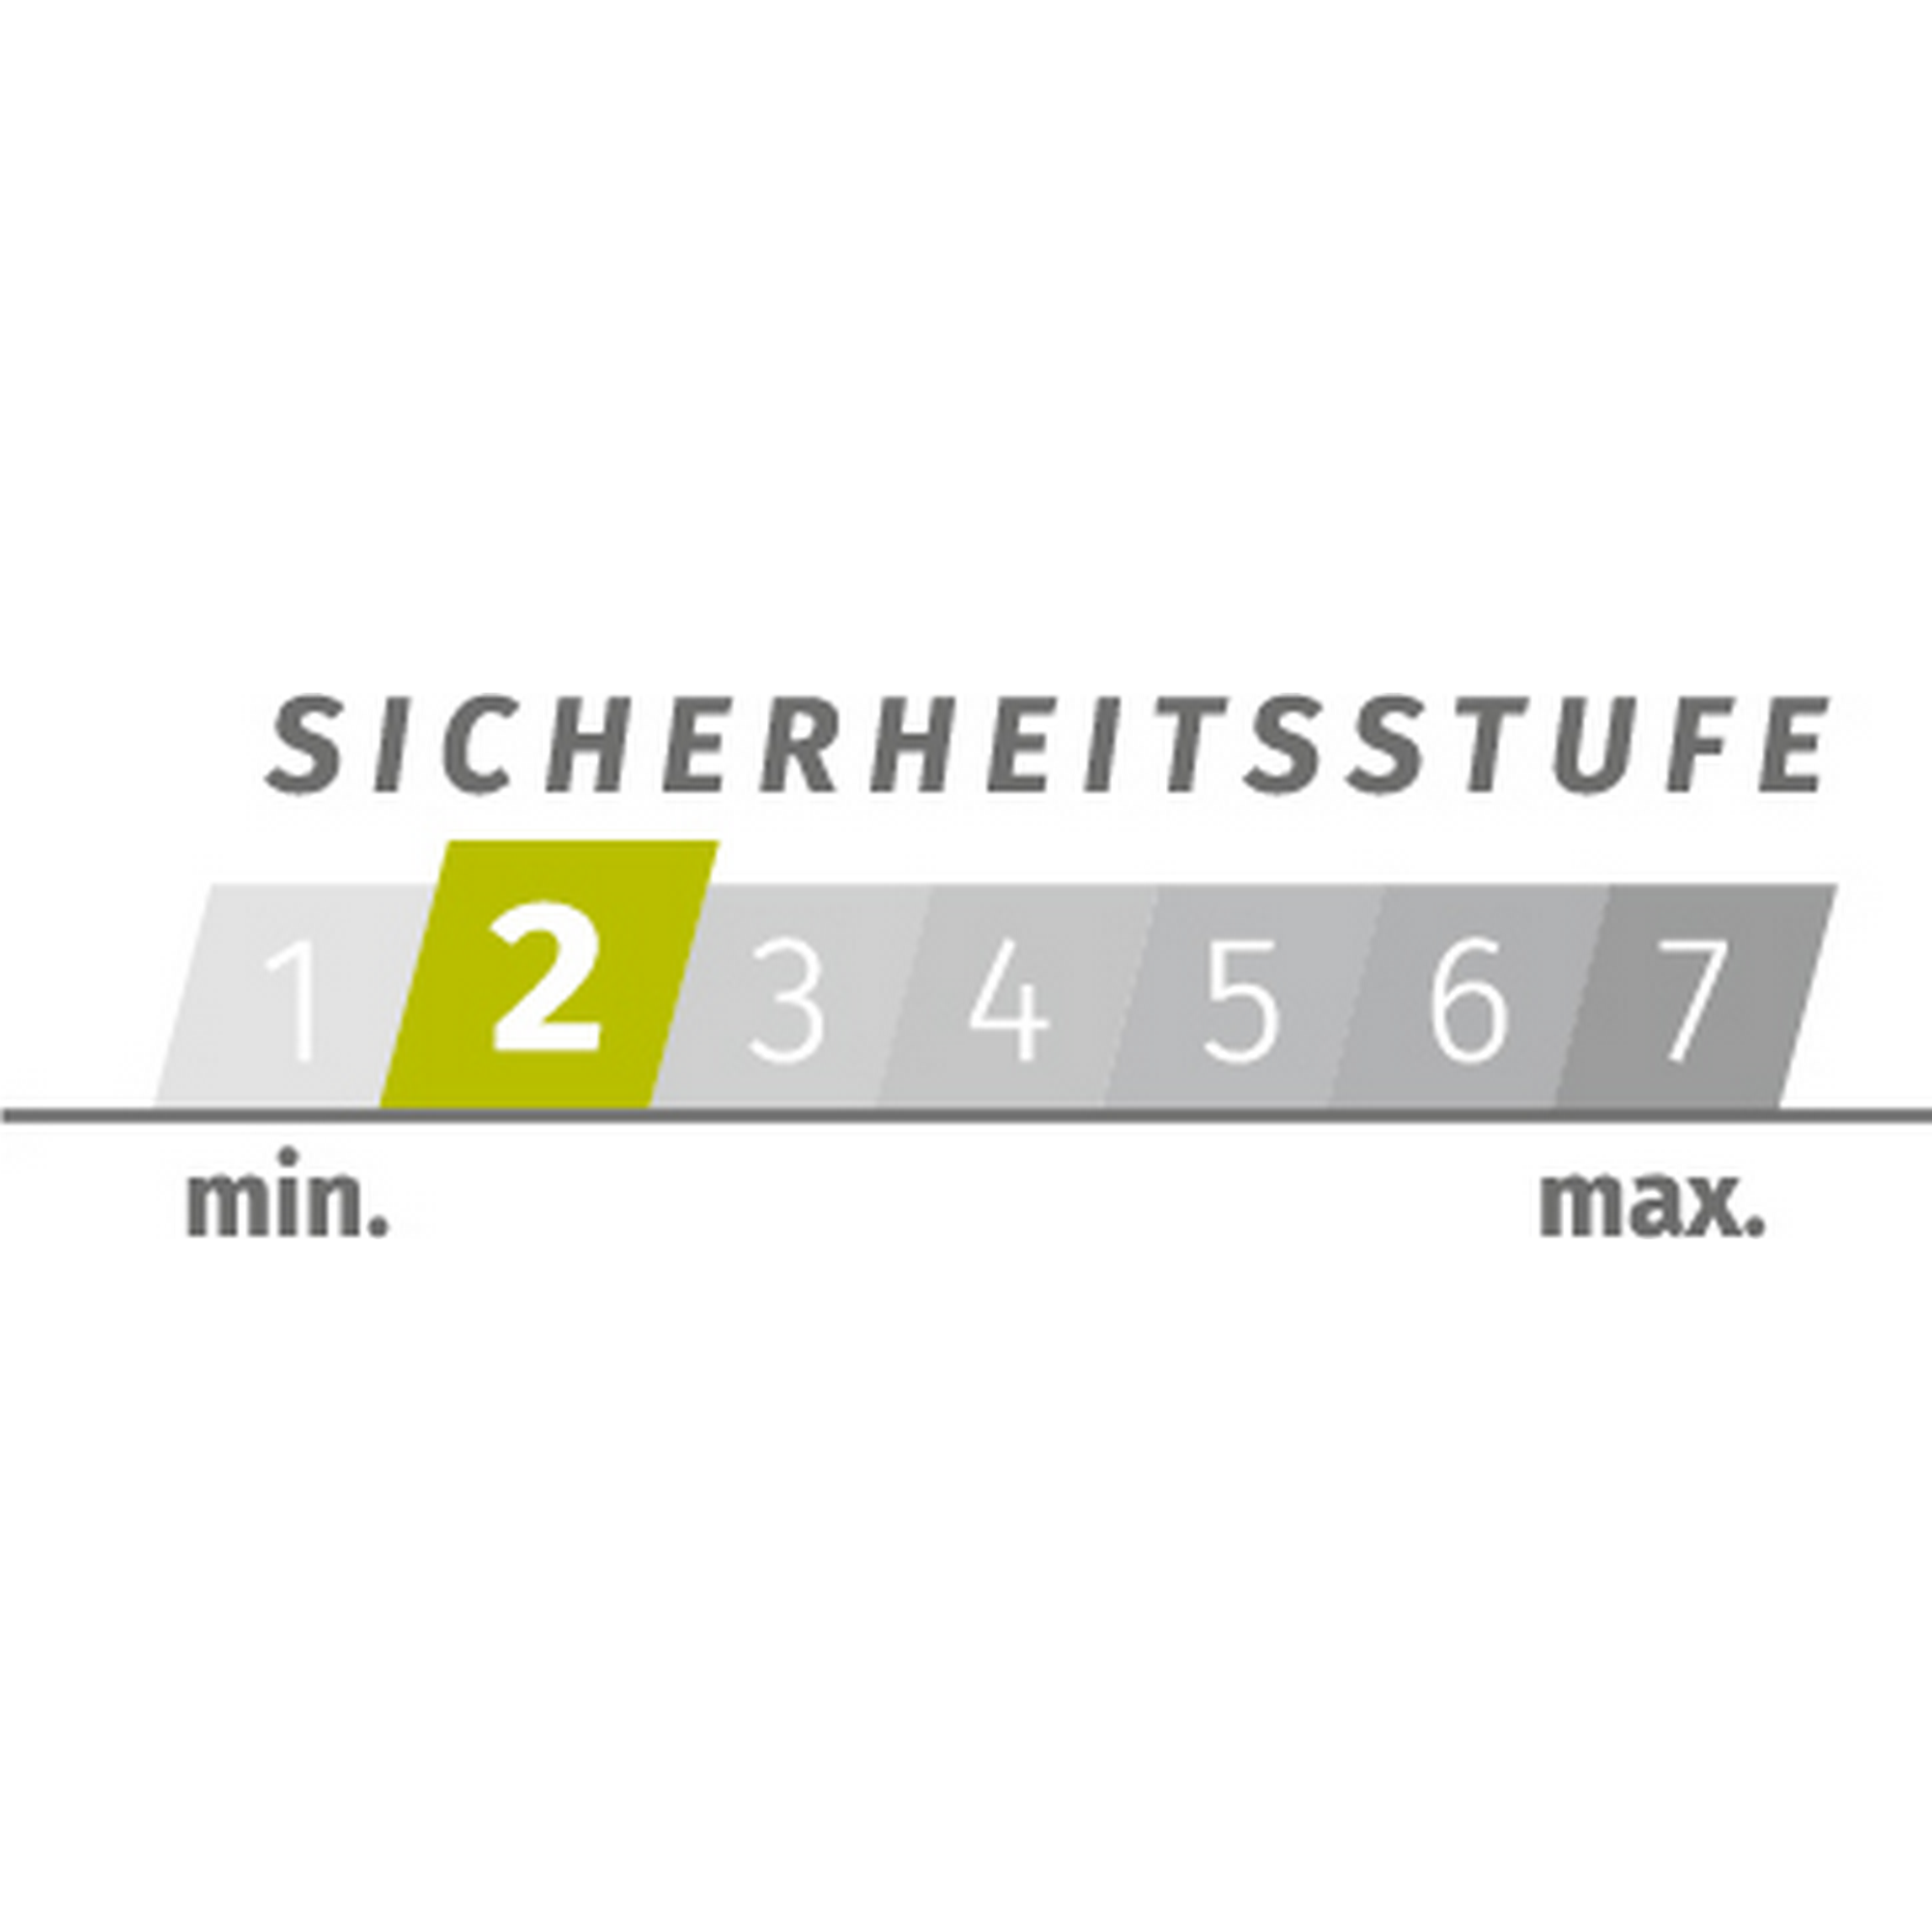 Spiralkabelschloss 150 cm, 2 Farben sortiert + product picture